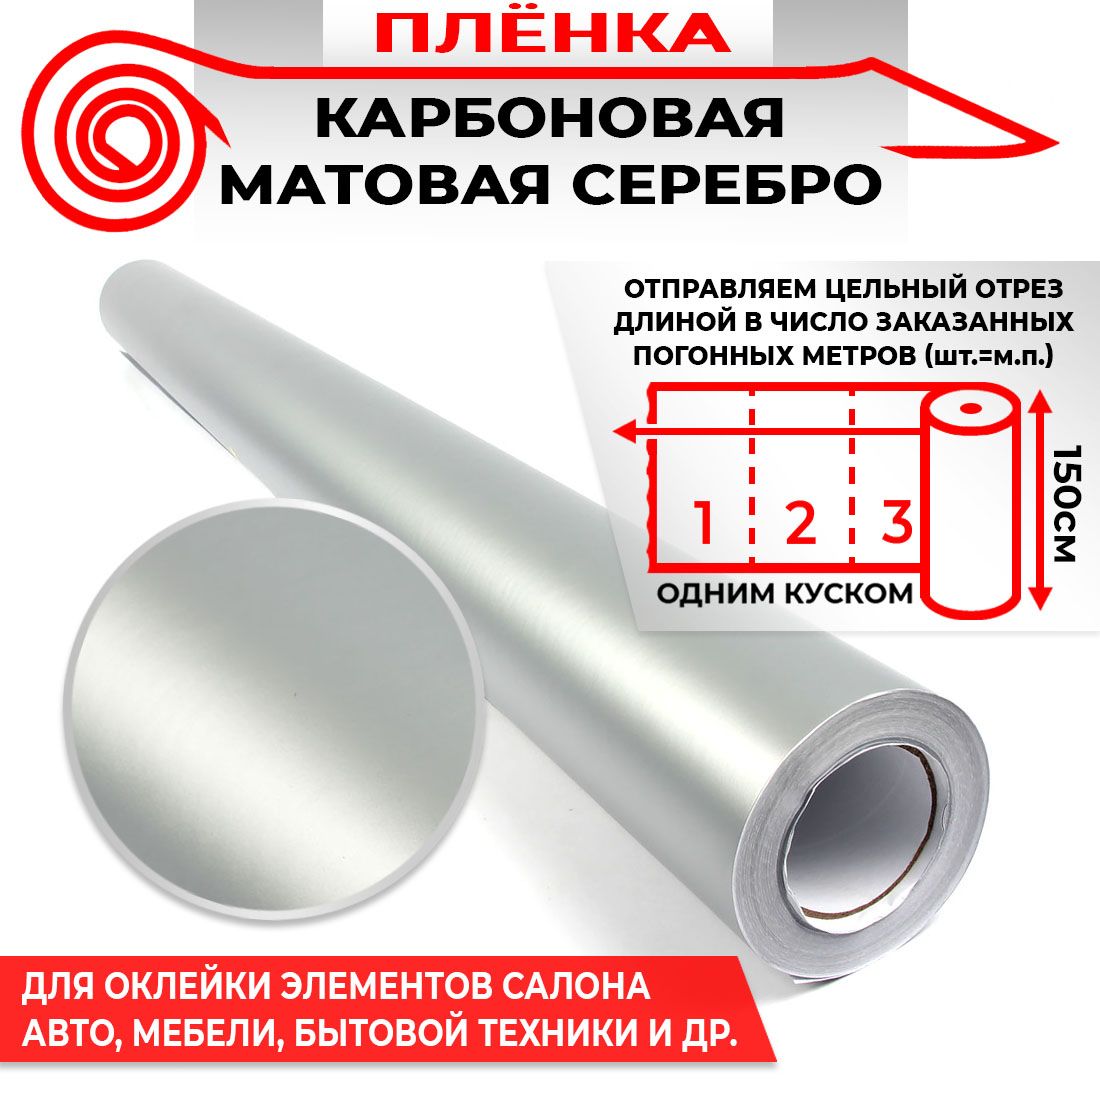 Пленка карбоновая матовая - Серебро 160мкм 1.5м х 0.5п.м